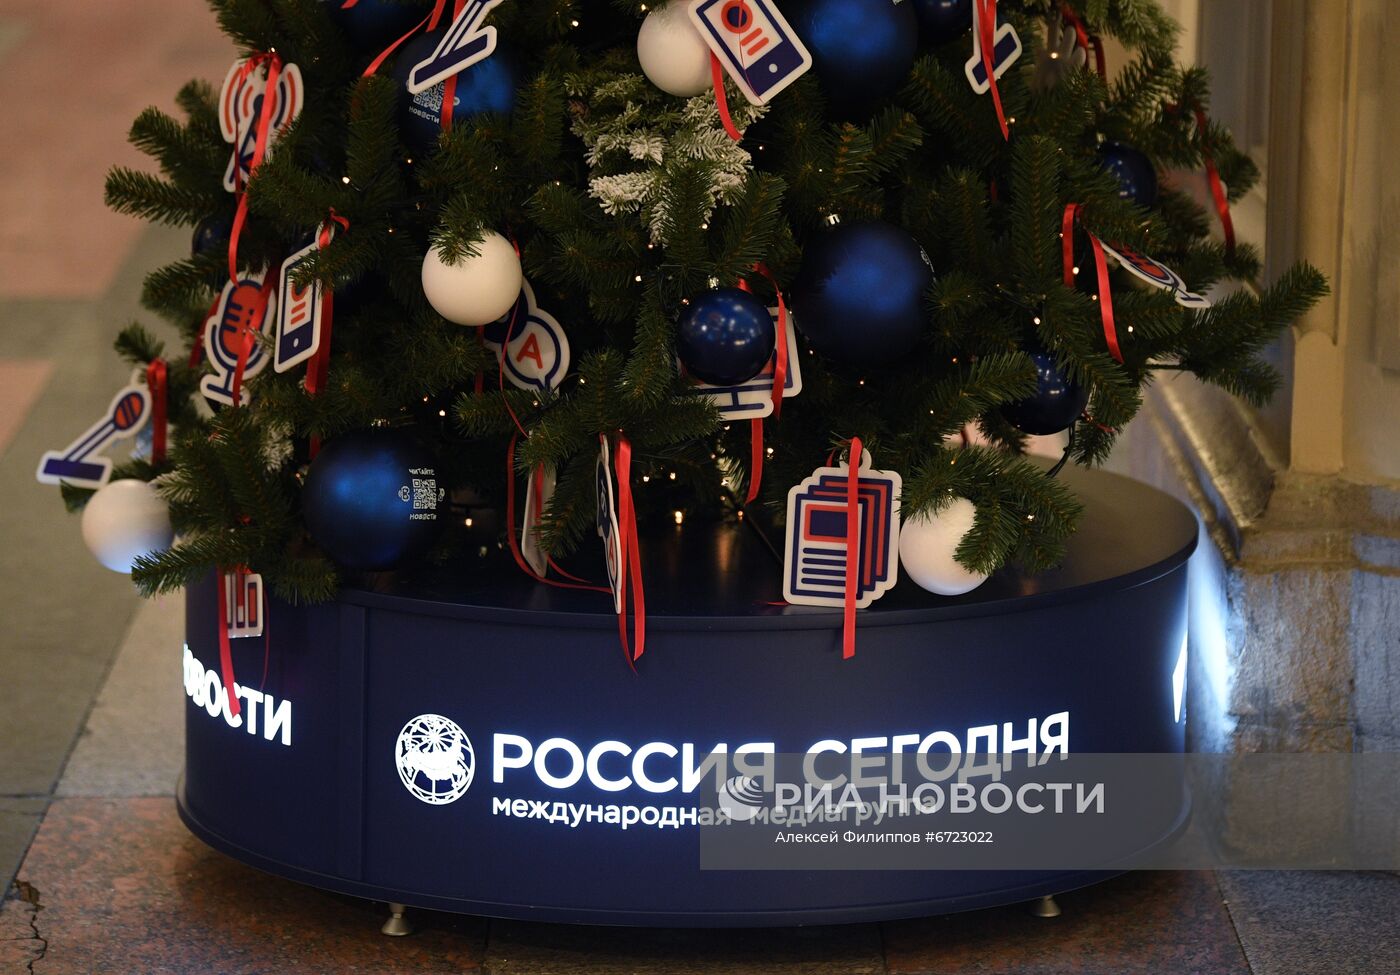 Новогодняя елка агентства "Россия сегодня" в ГУМе